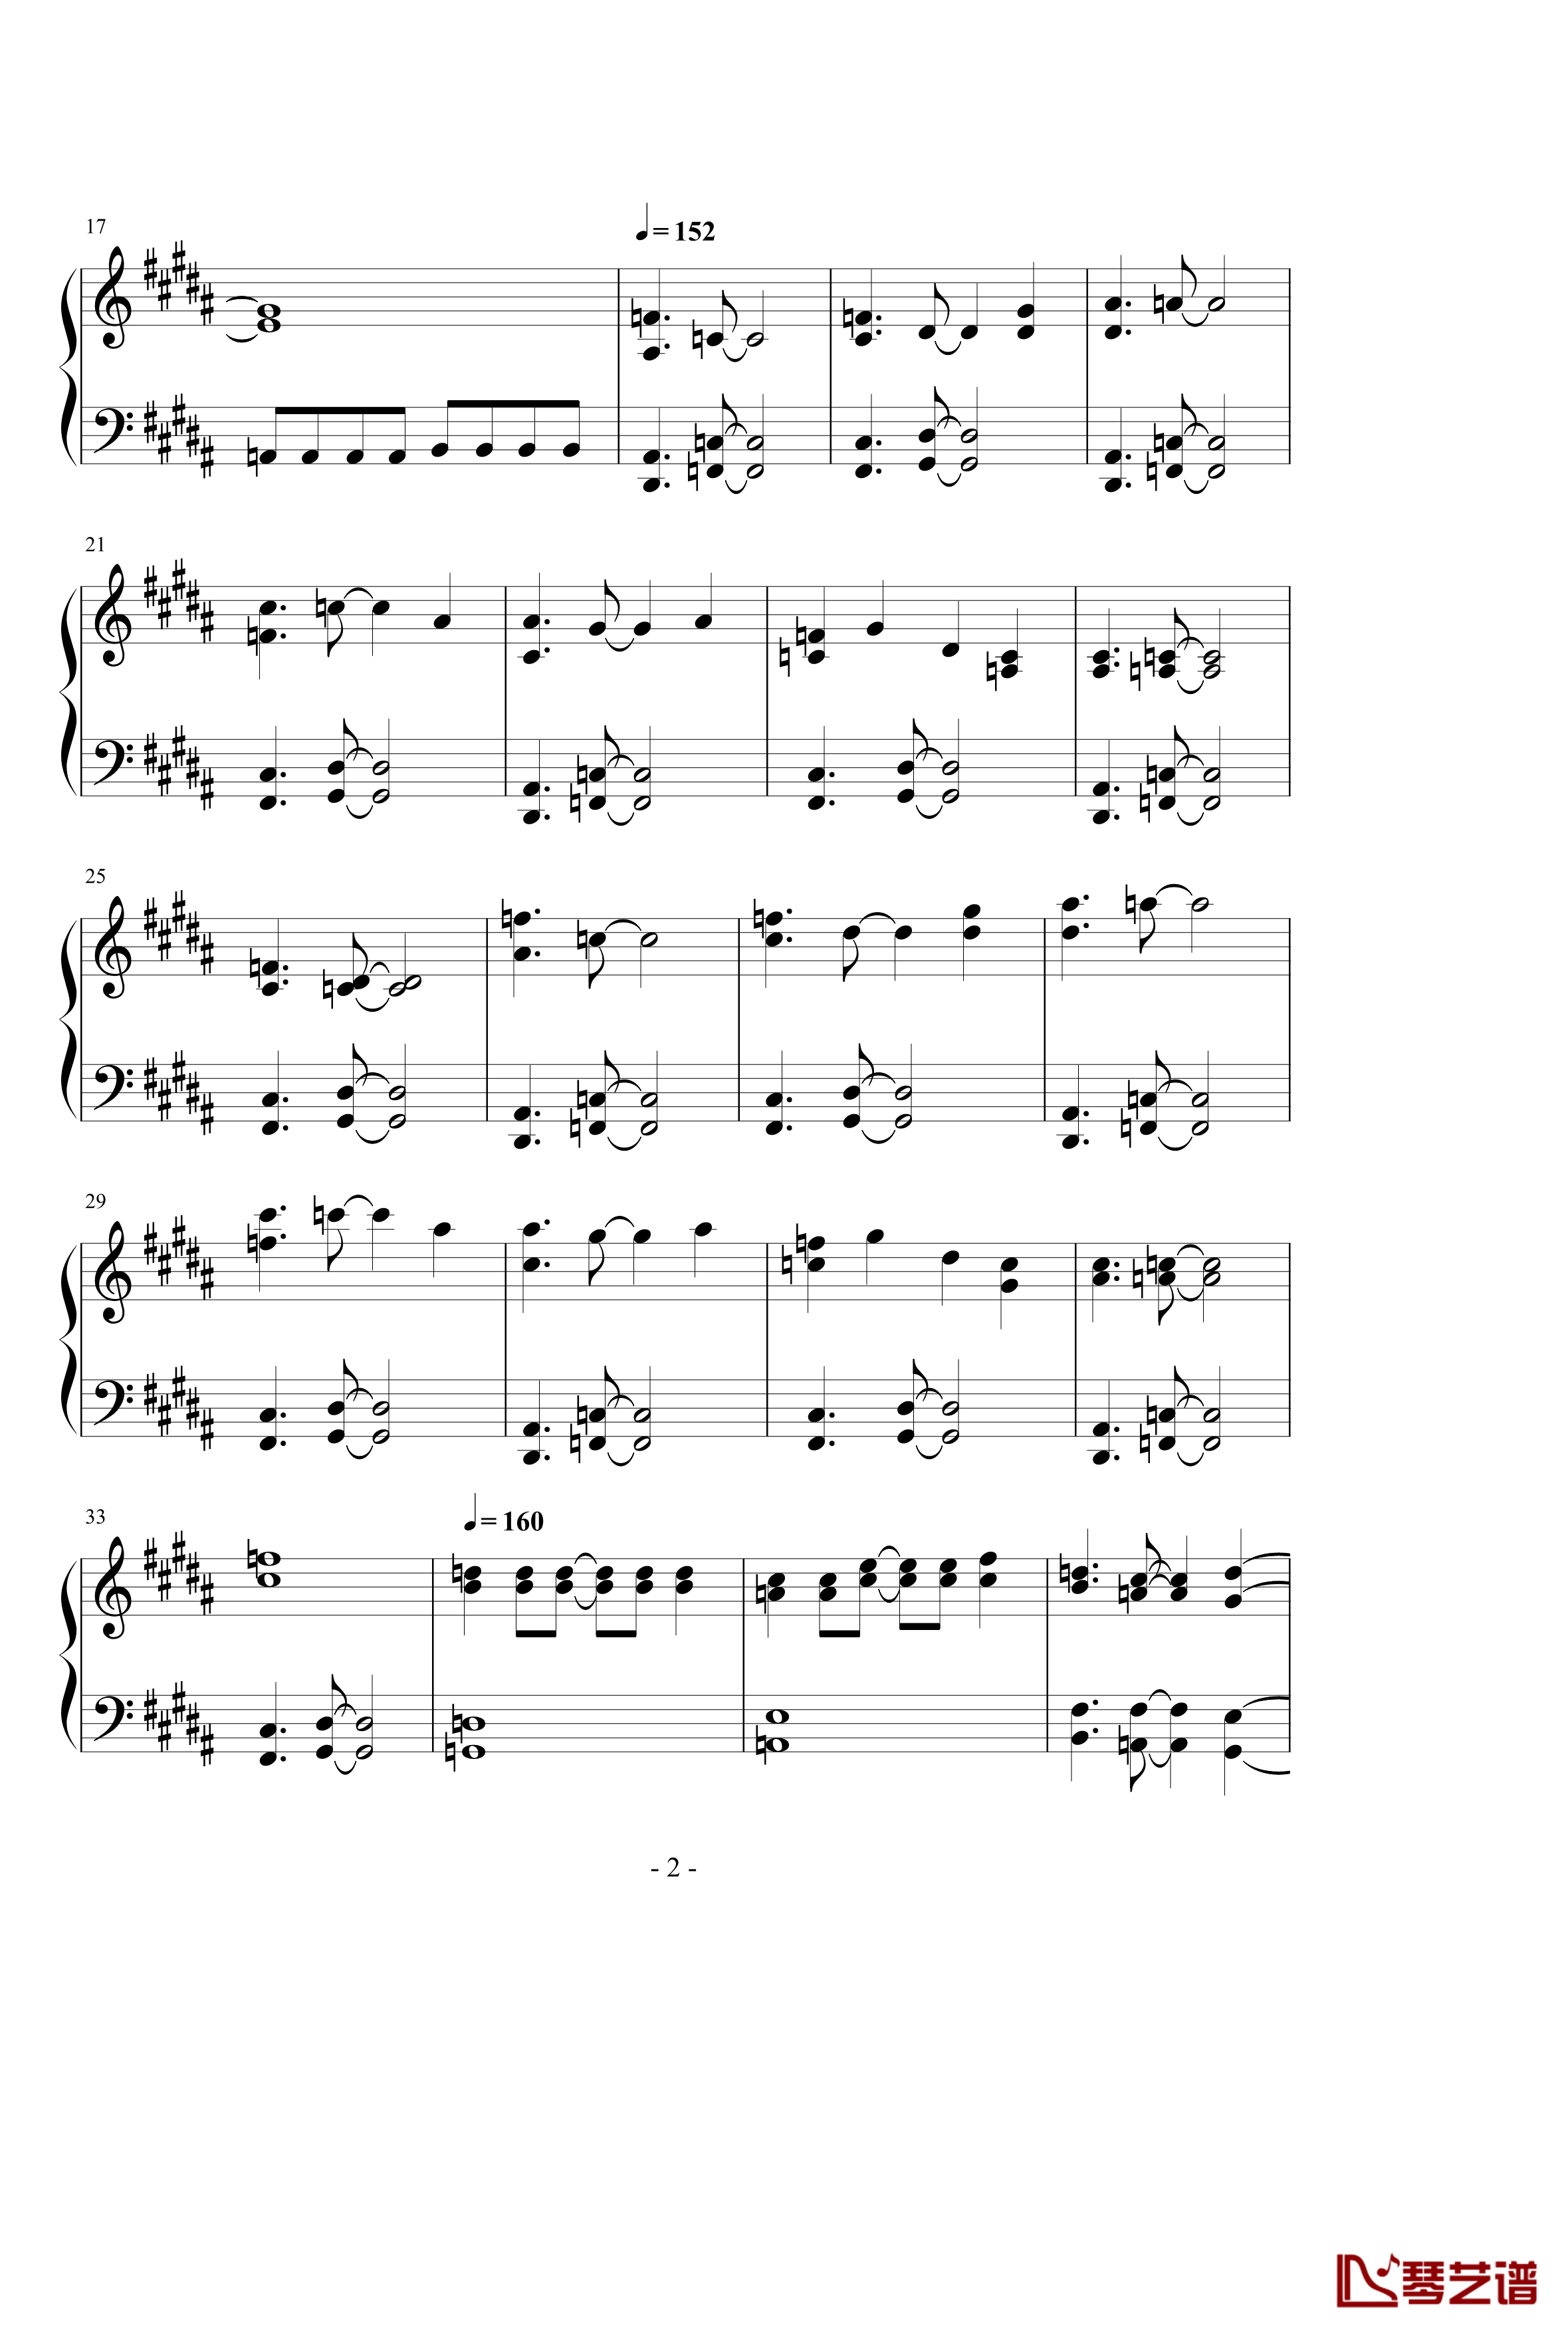 ネクロファンタジア钢琴谱-八云紫2